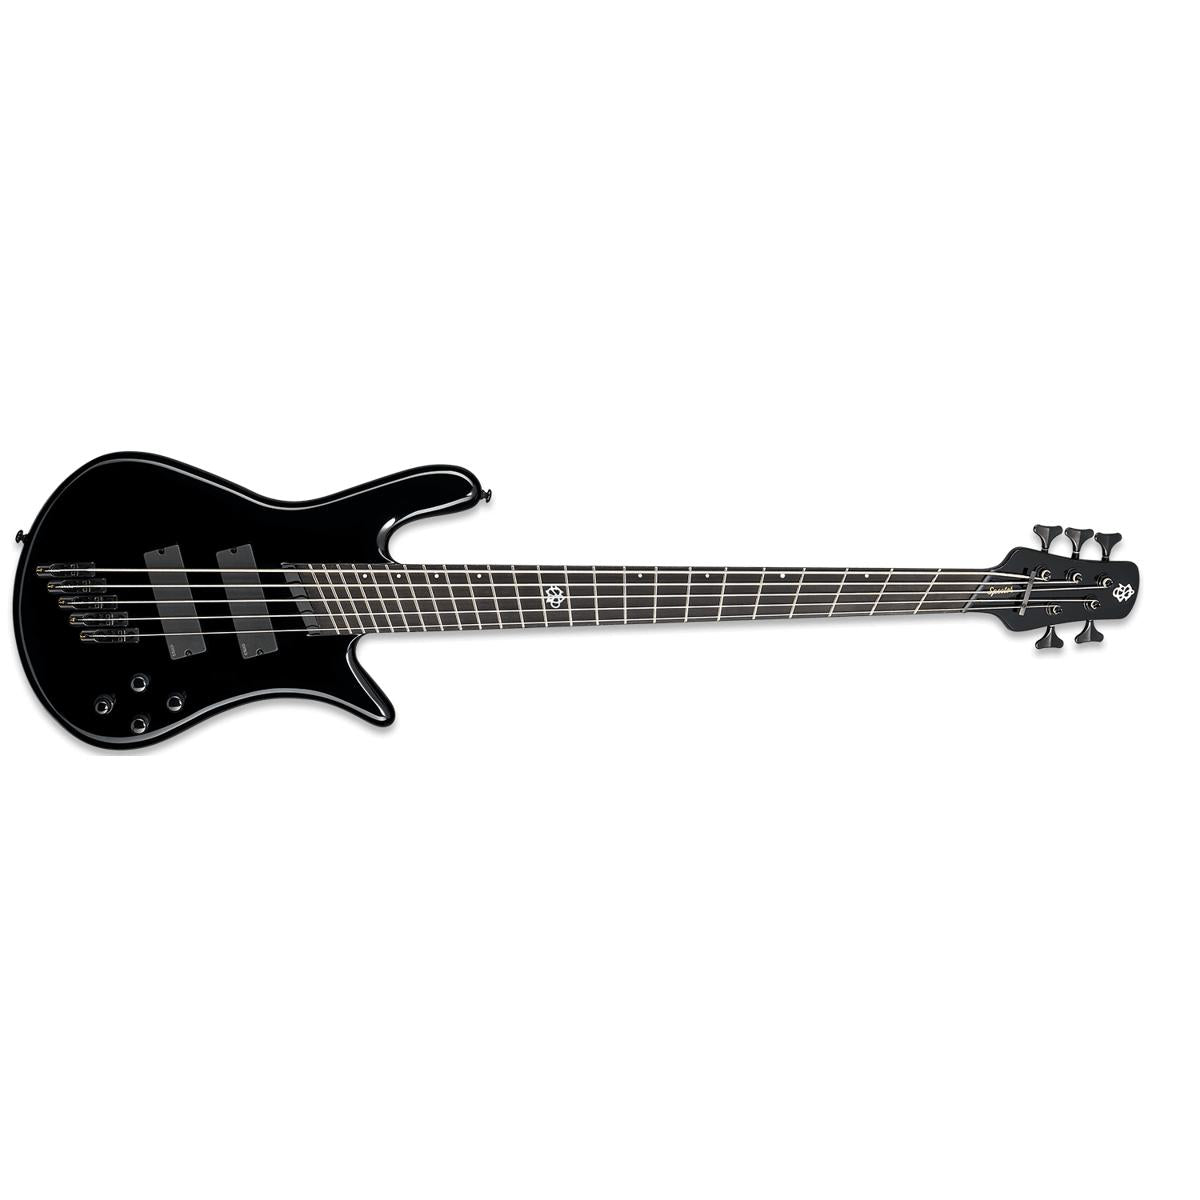 Spector NS Dimension HP 5 Bass Guitar Multi-Scale 5-String Black w/ EMGs & Darkglass Tone Capsule - NSDM5BK